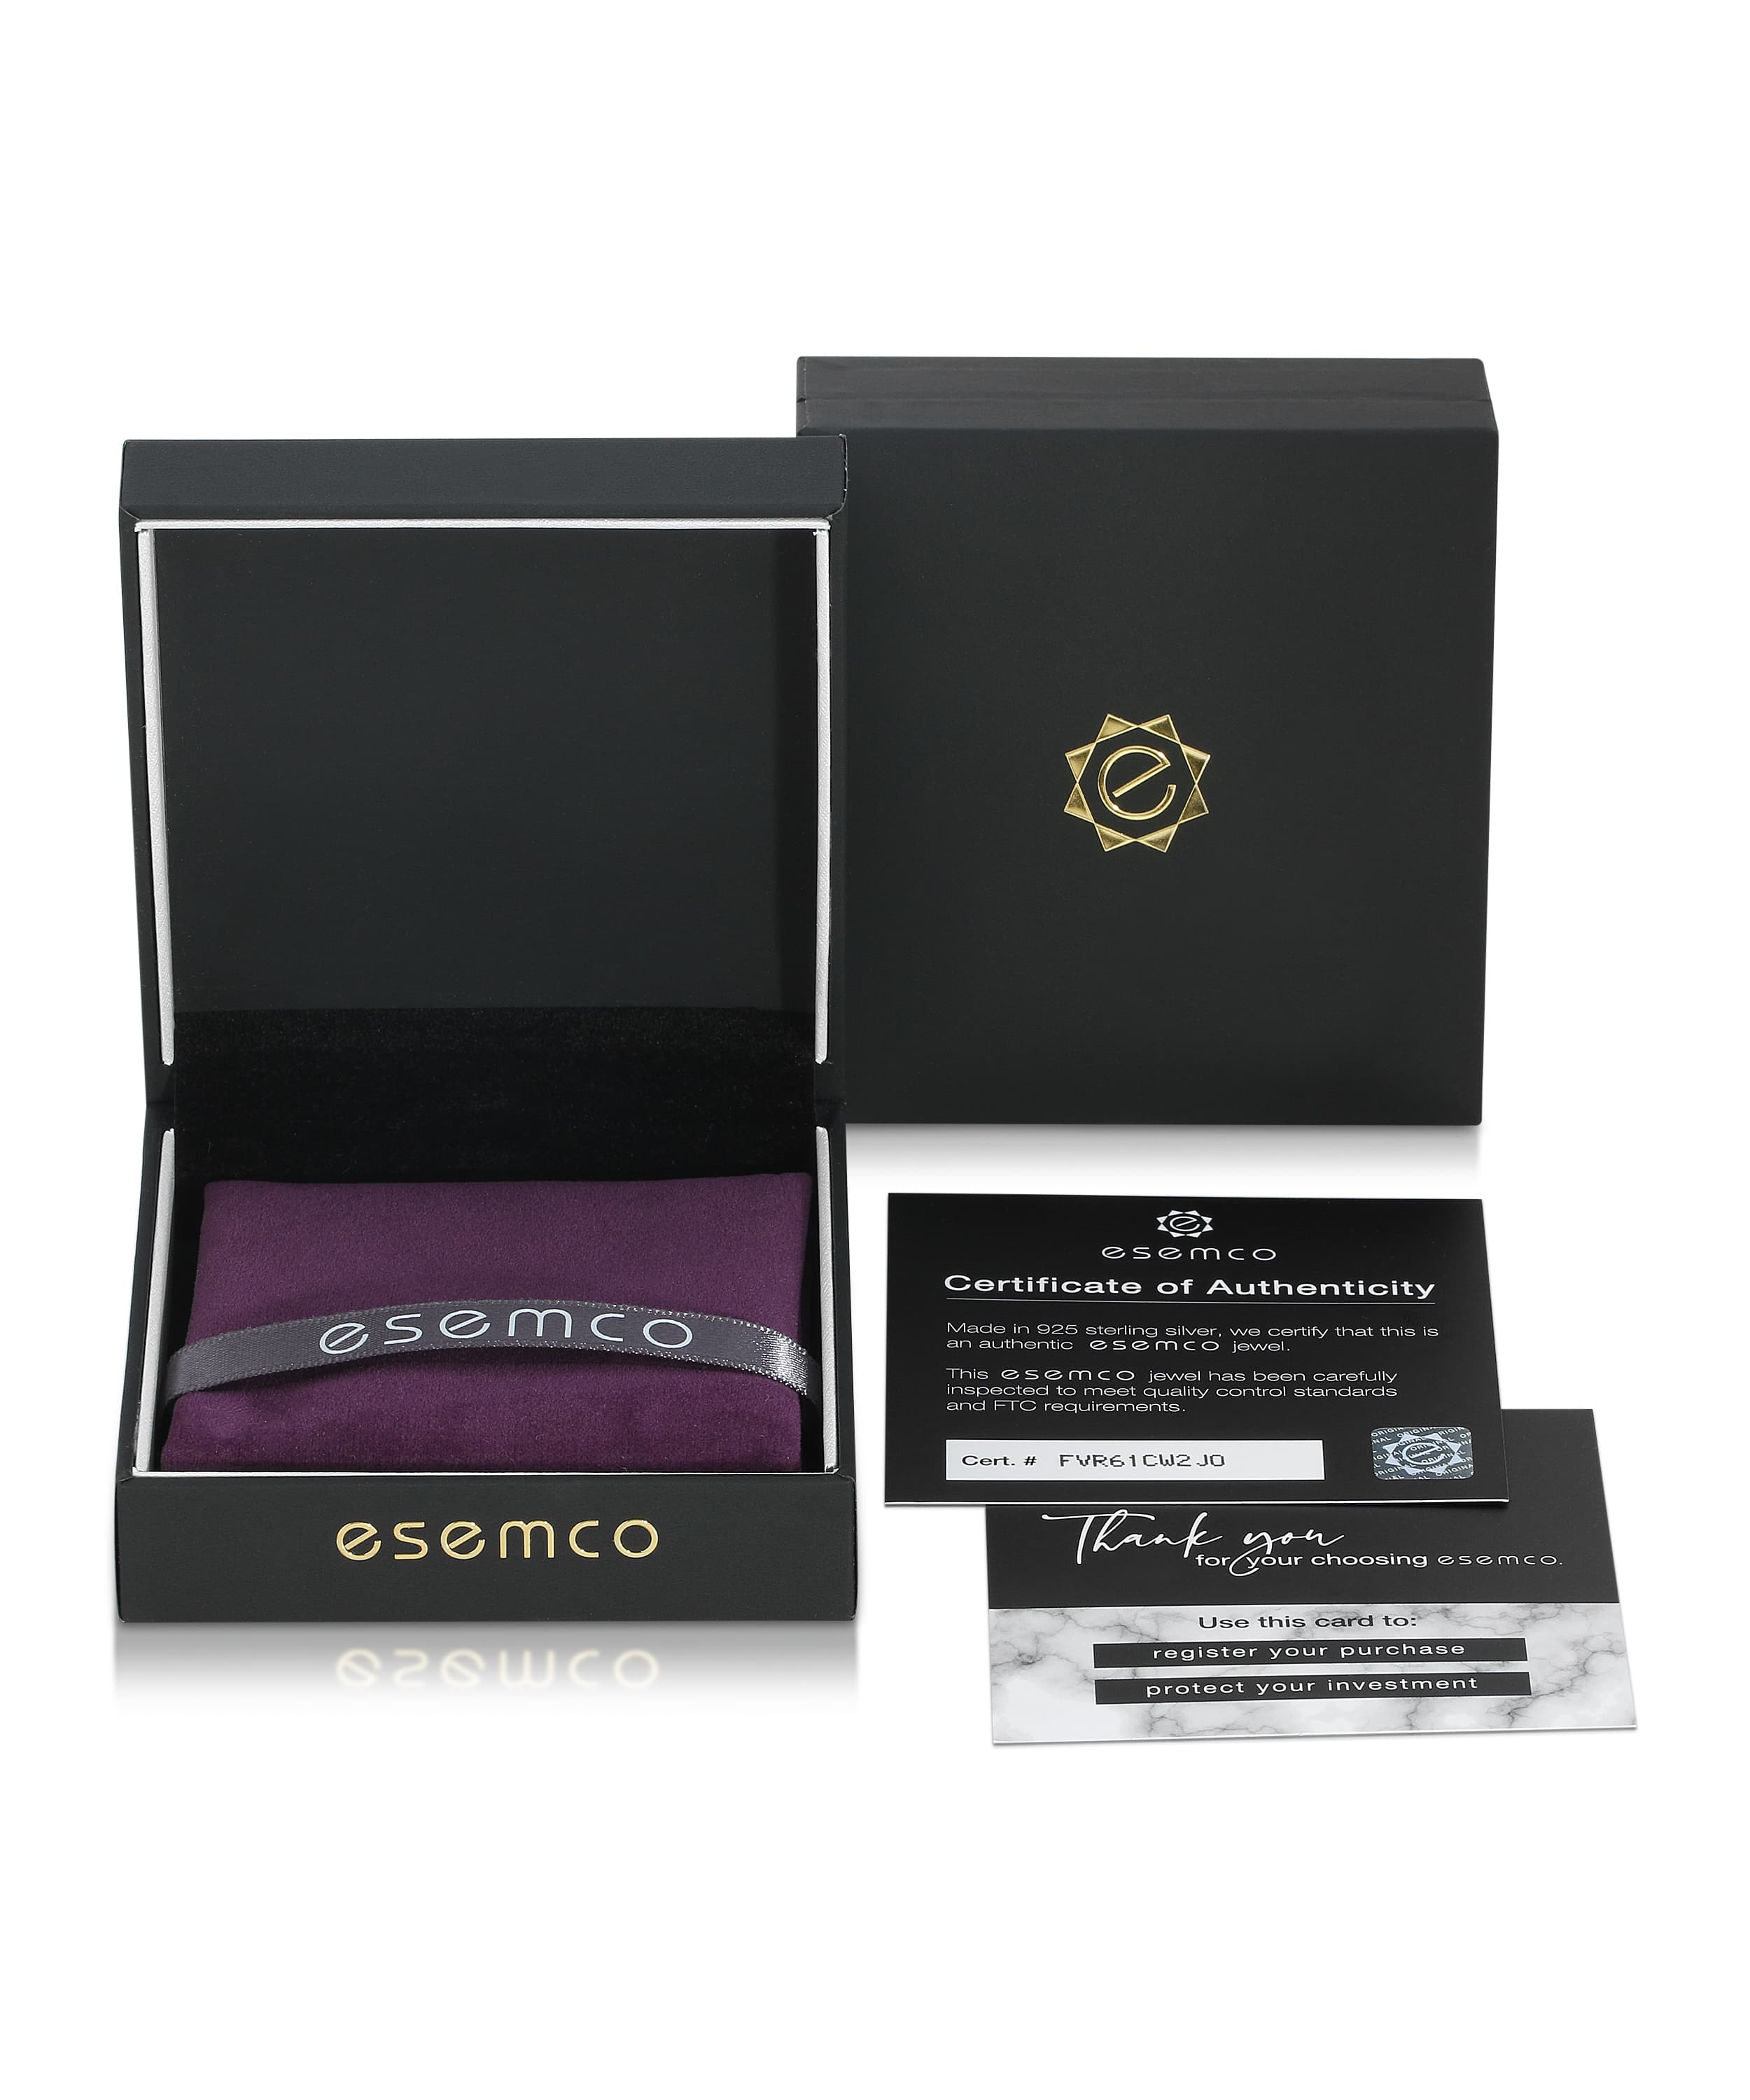 ESEMCO Diamond 18k White Gold Letter B Initial Open Ring View 4